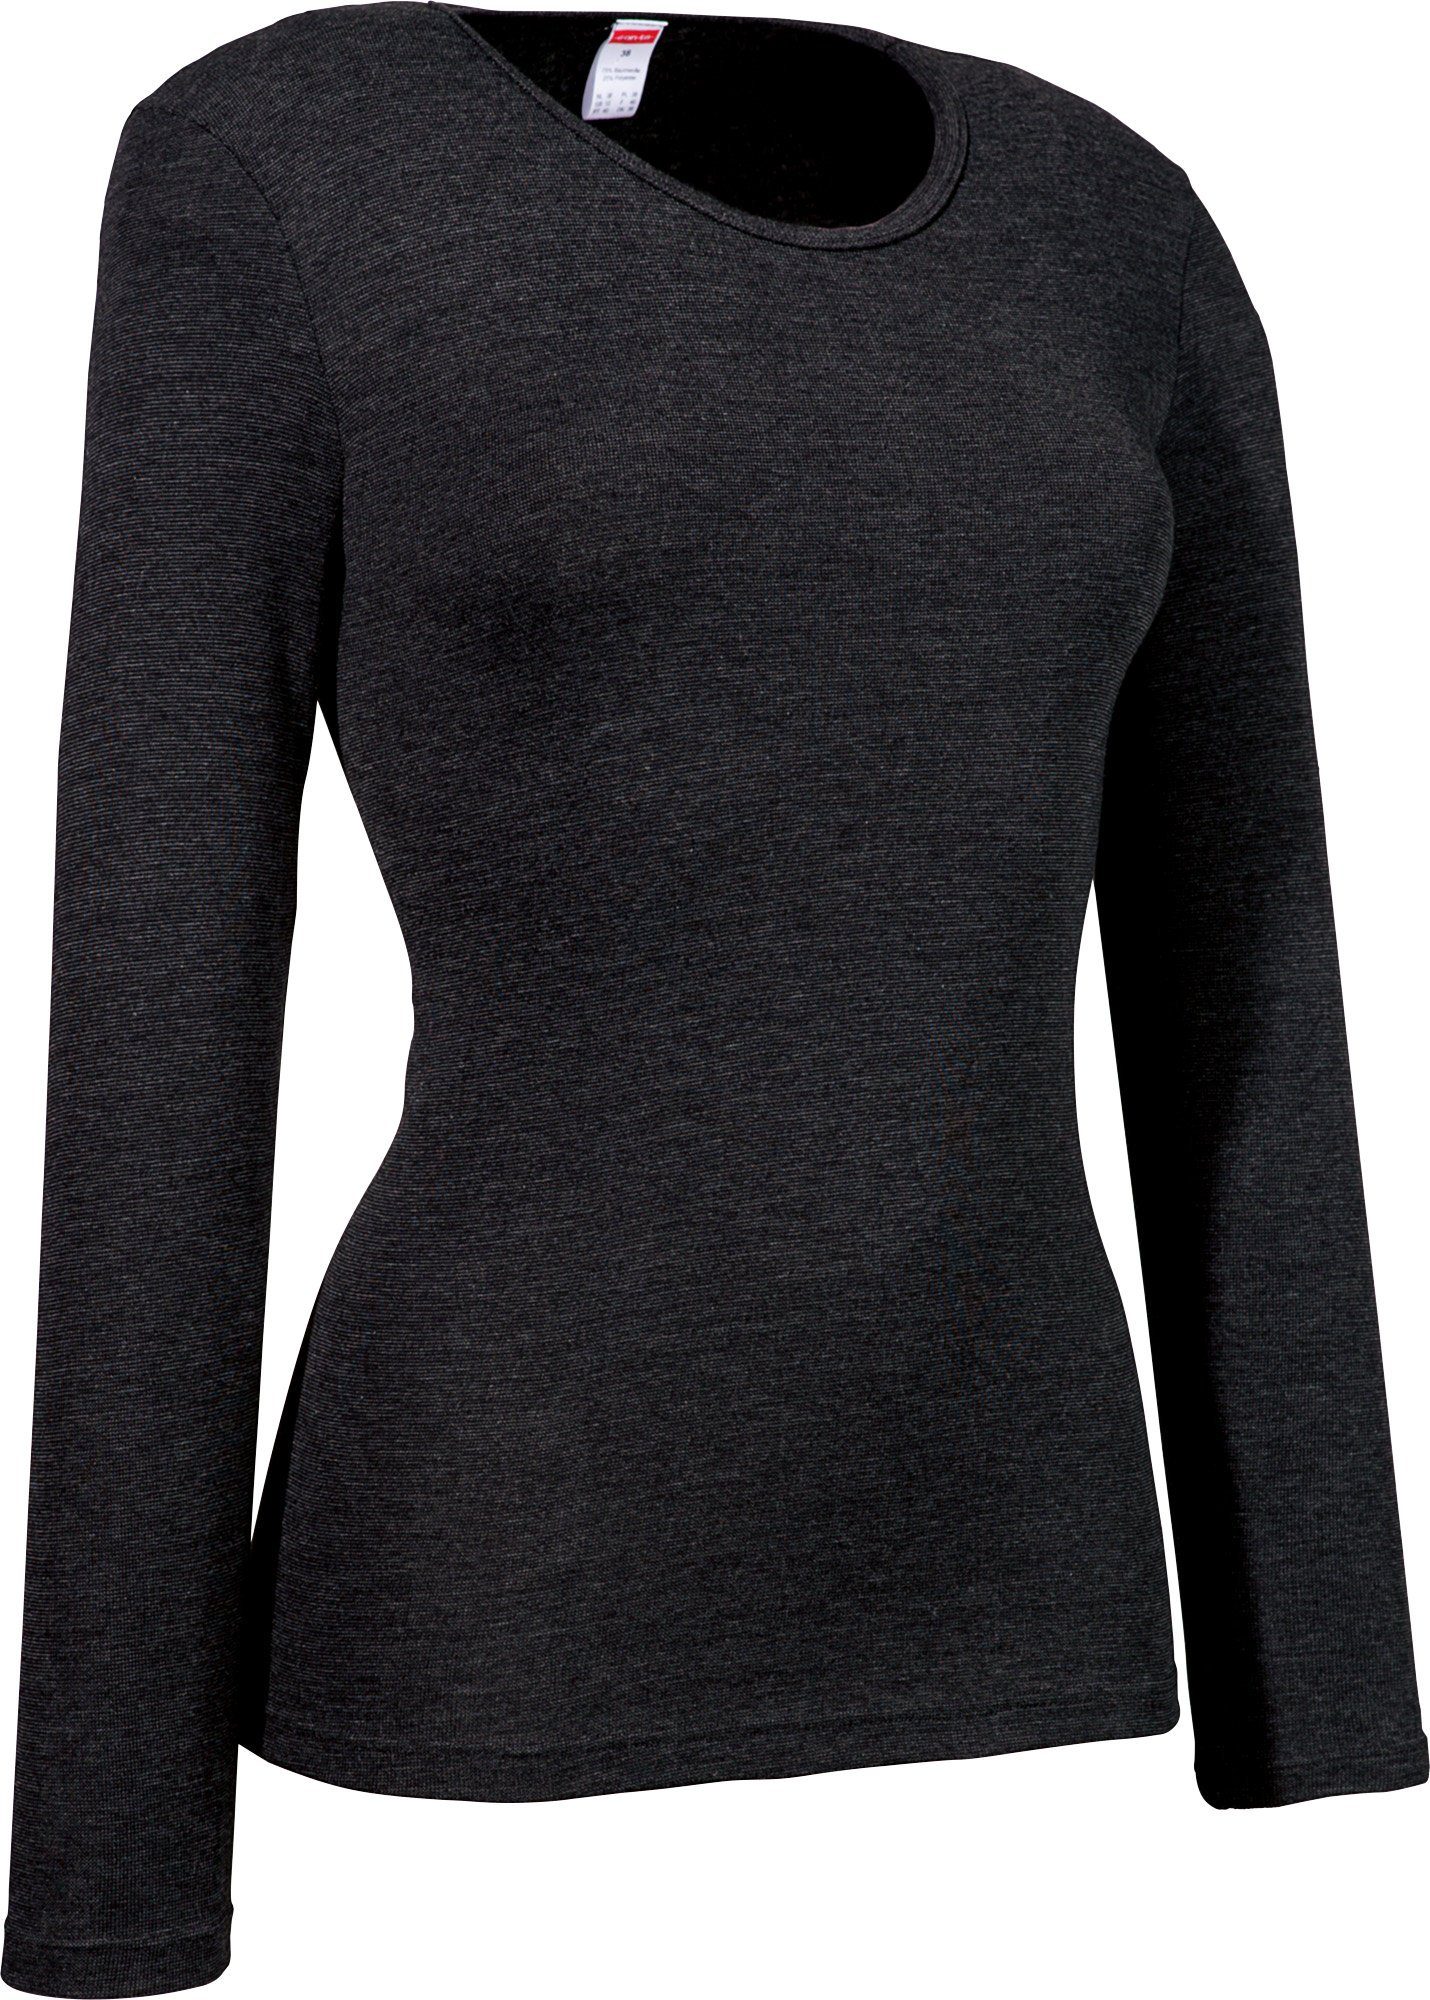 conta Unterhemd Damen-Thermo-Unterhemd, langarm Feinripp schwarz Streifen